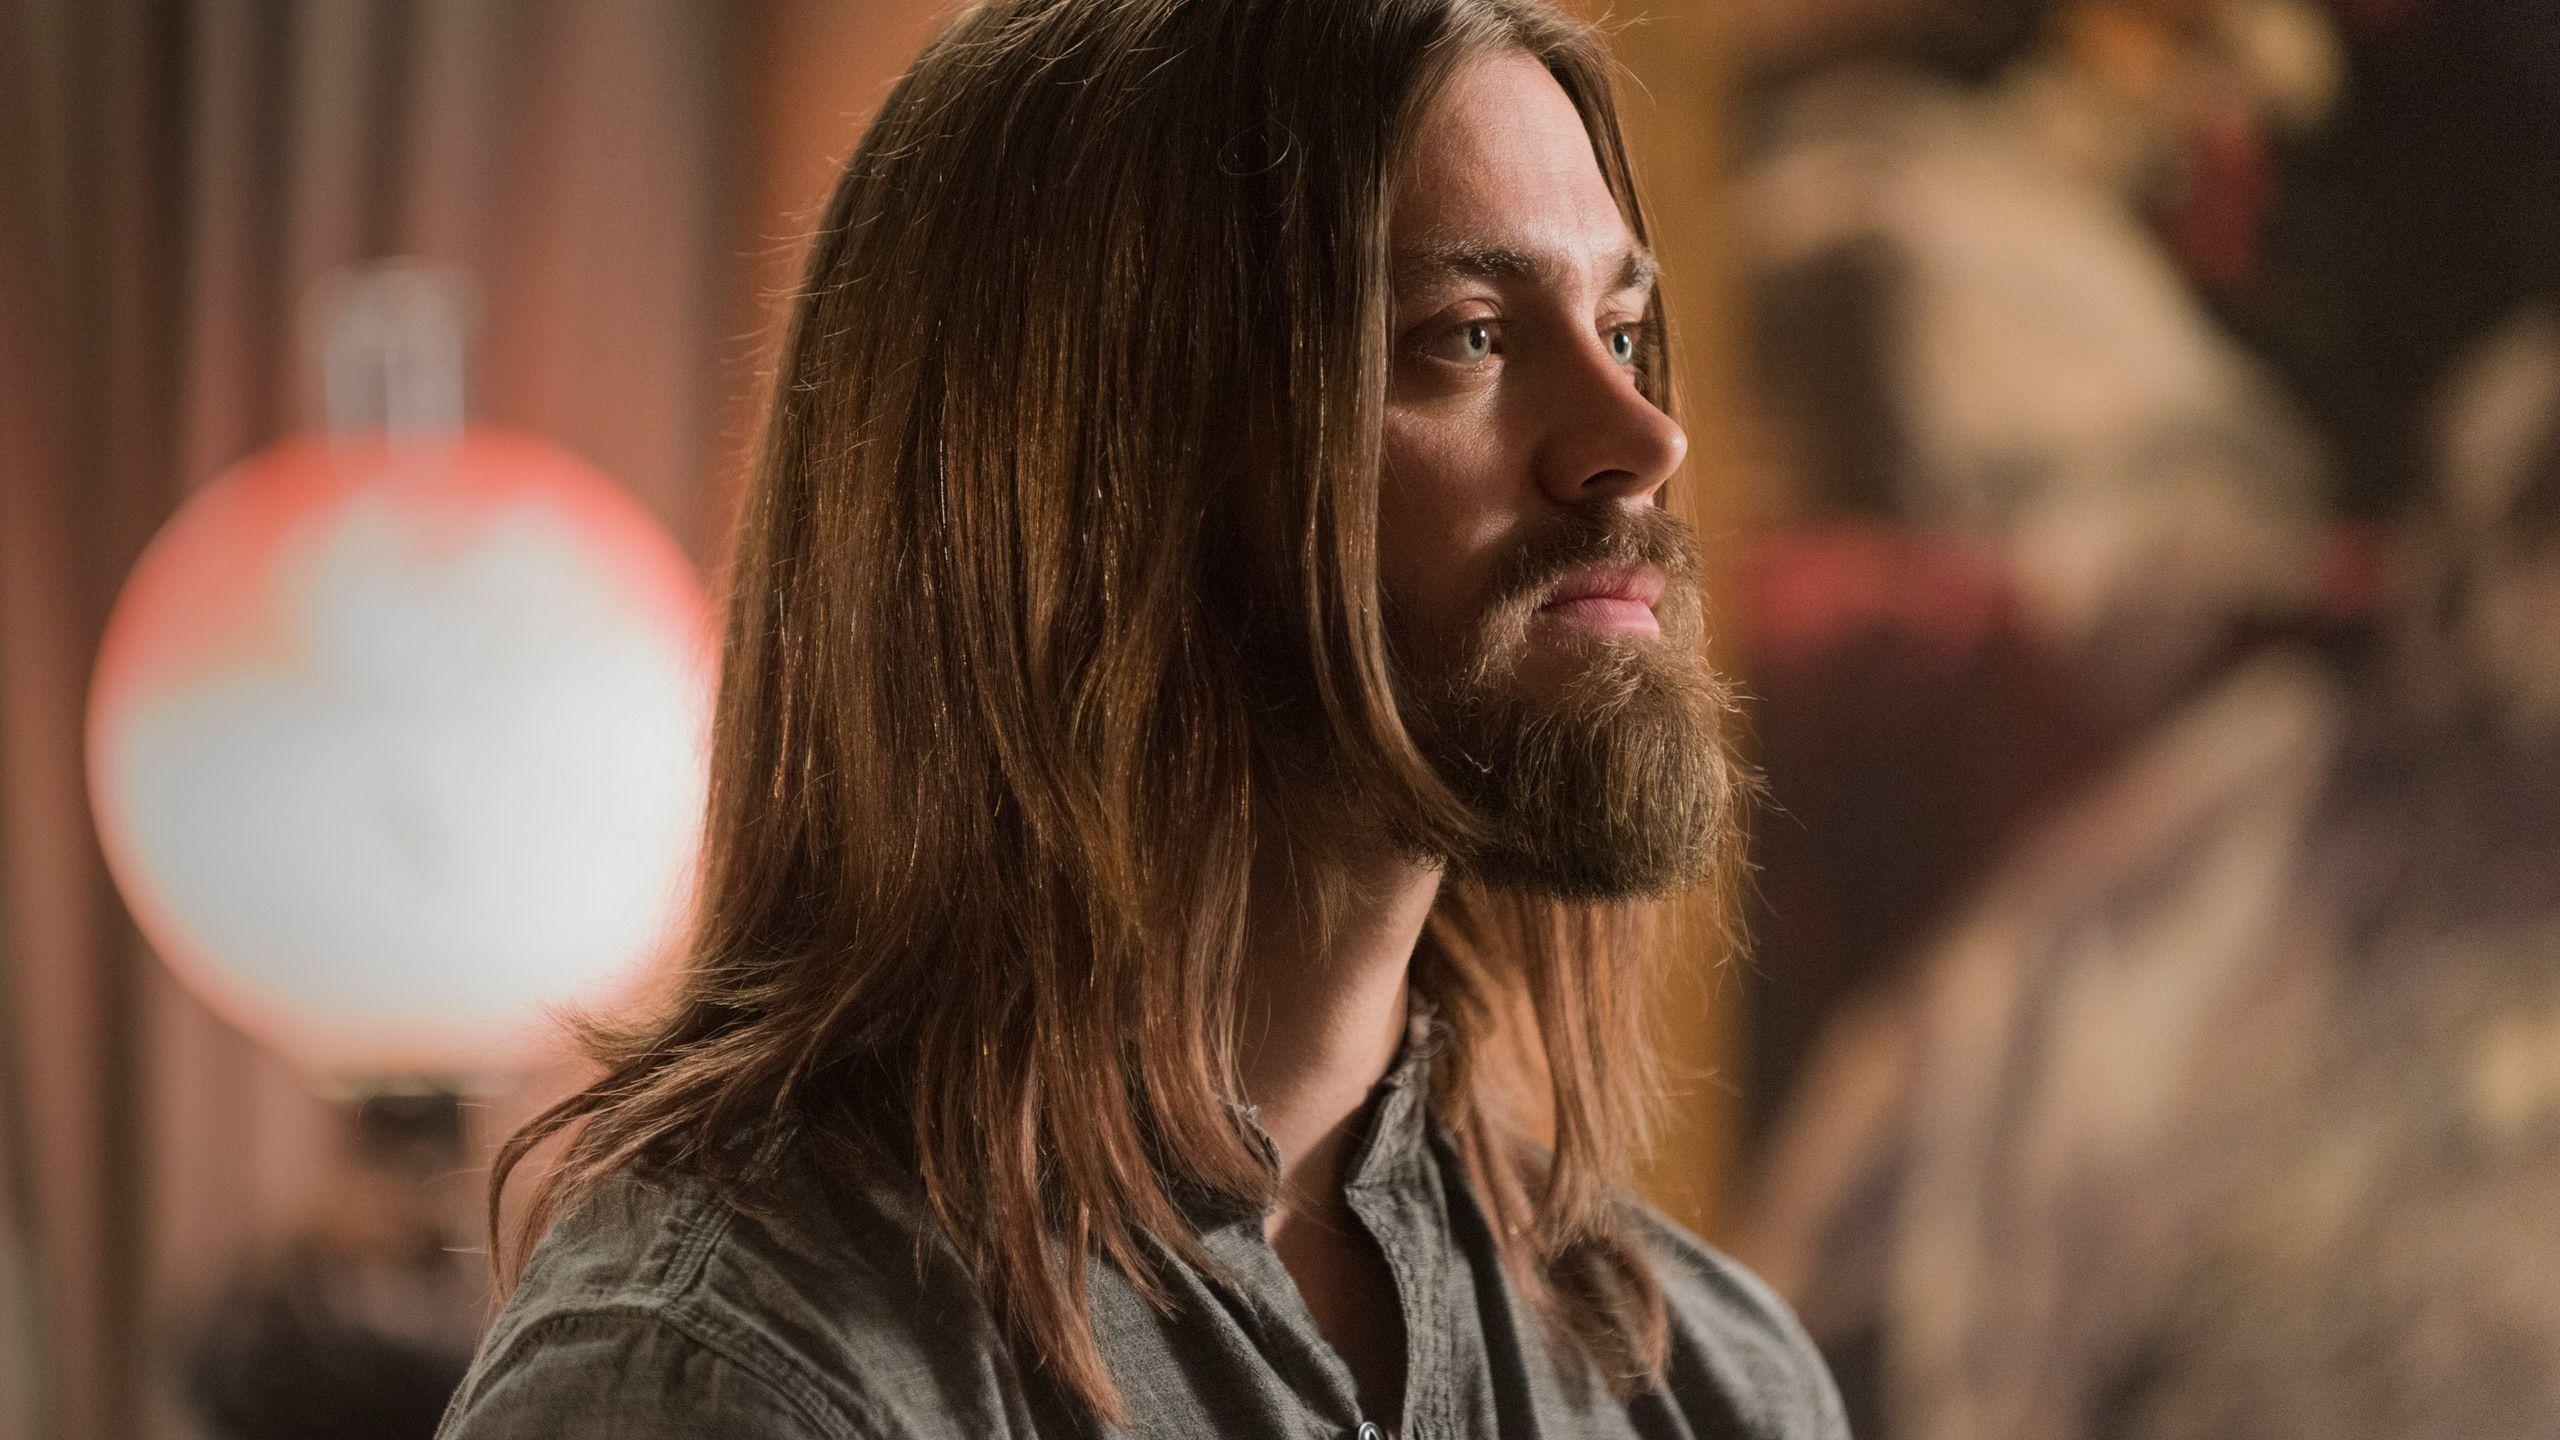 Download Jesus In The Walking Dead Season 8 HD 4k Wallpapers In